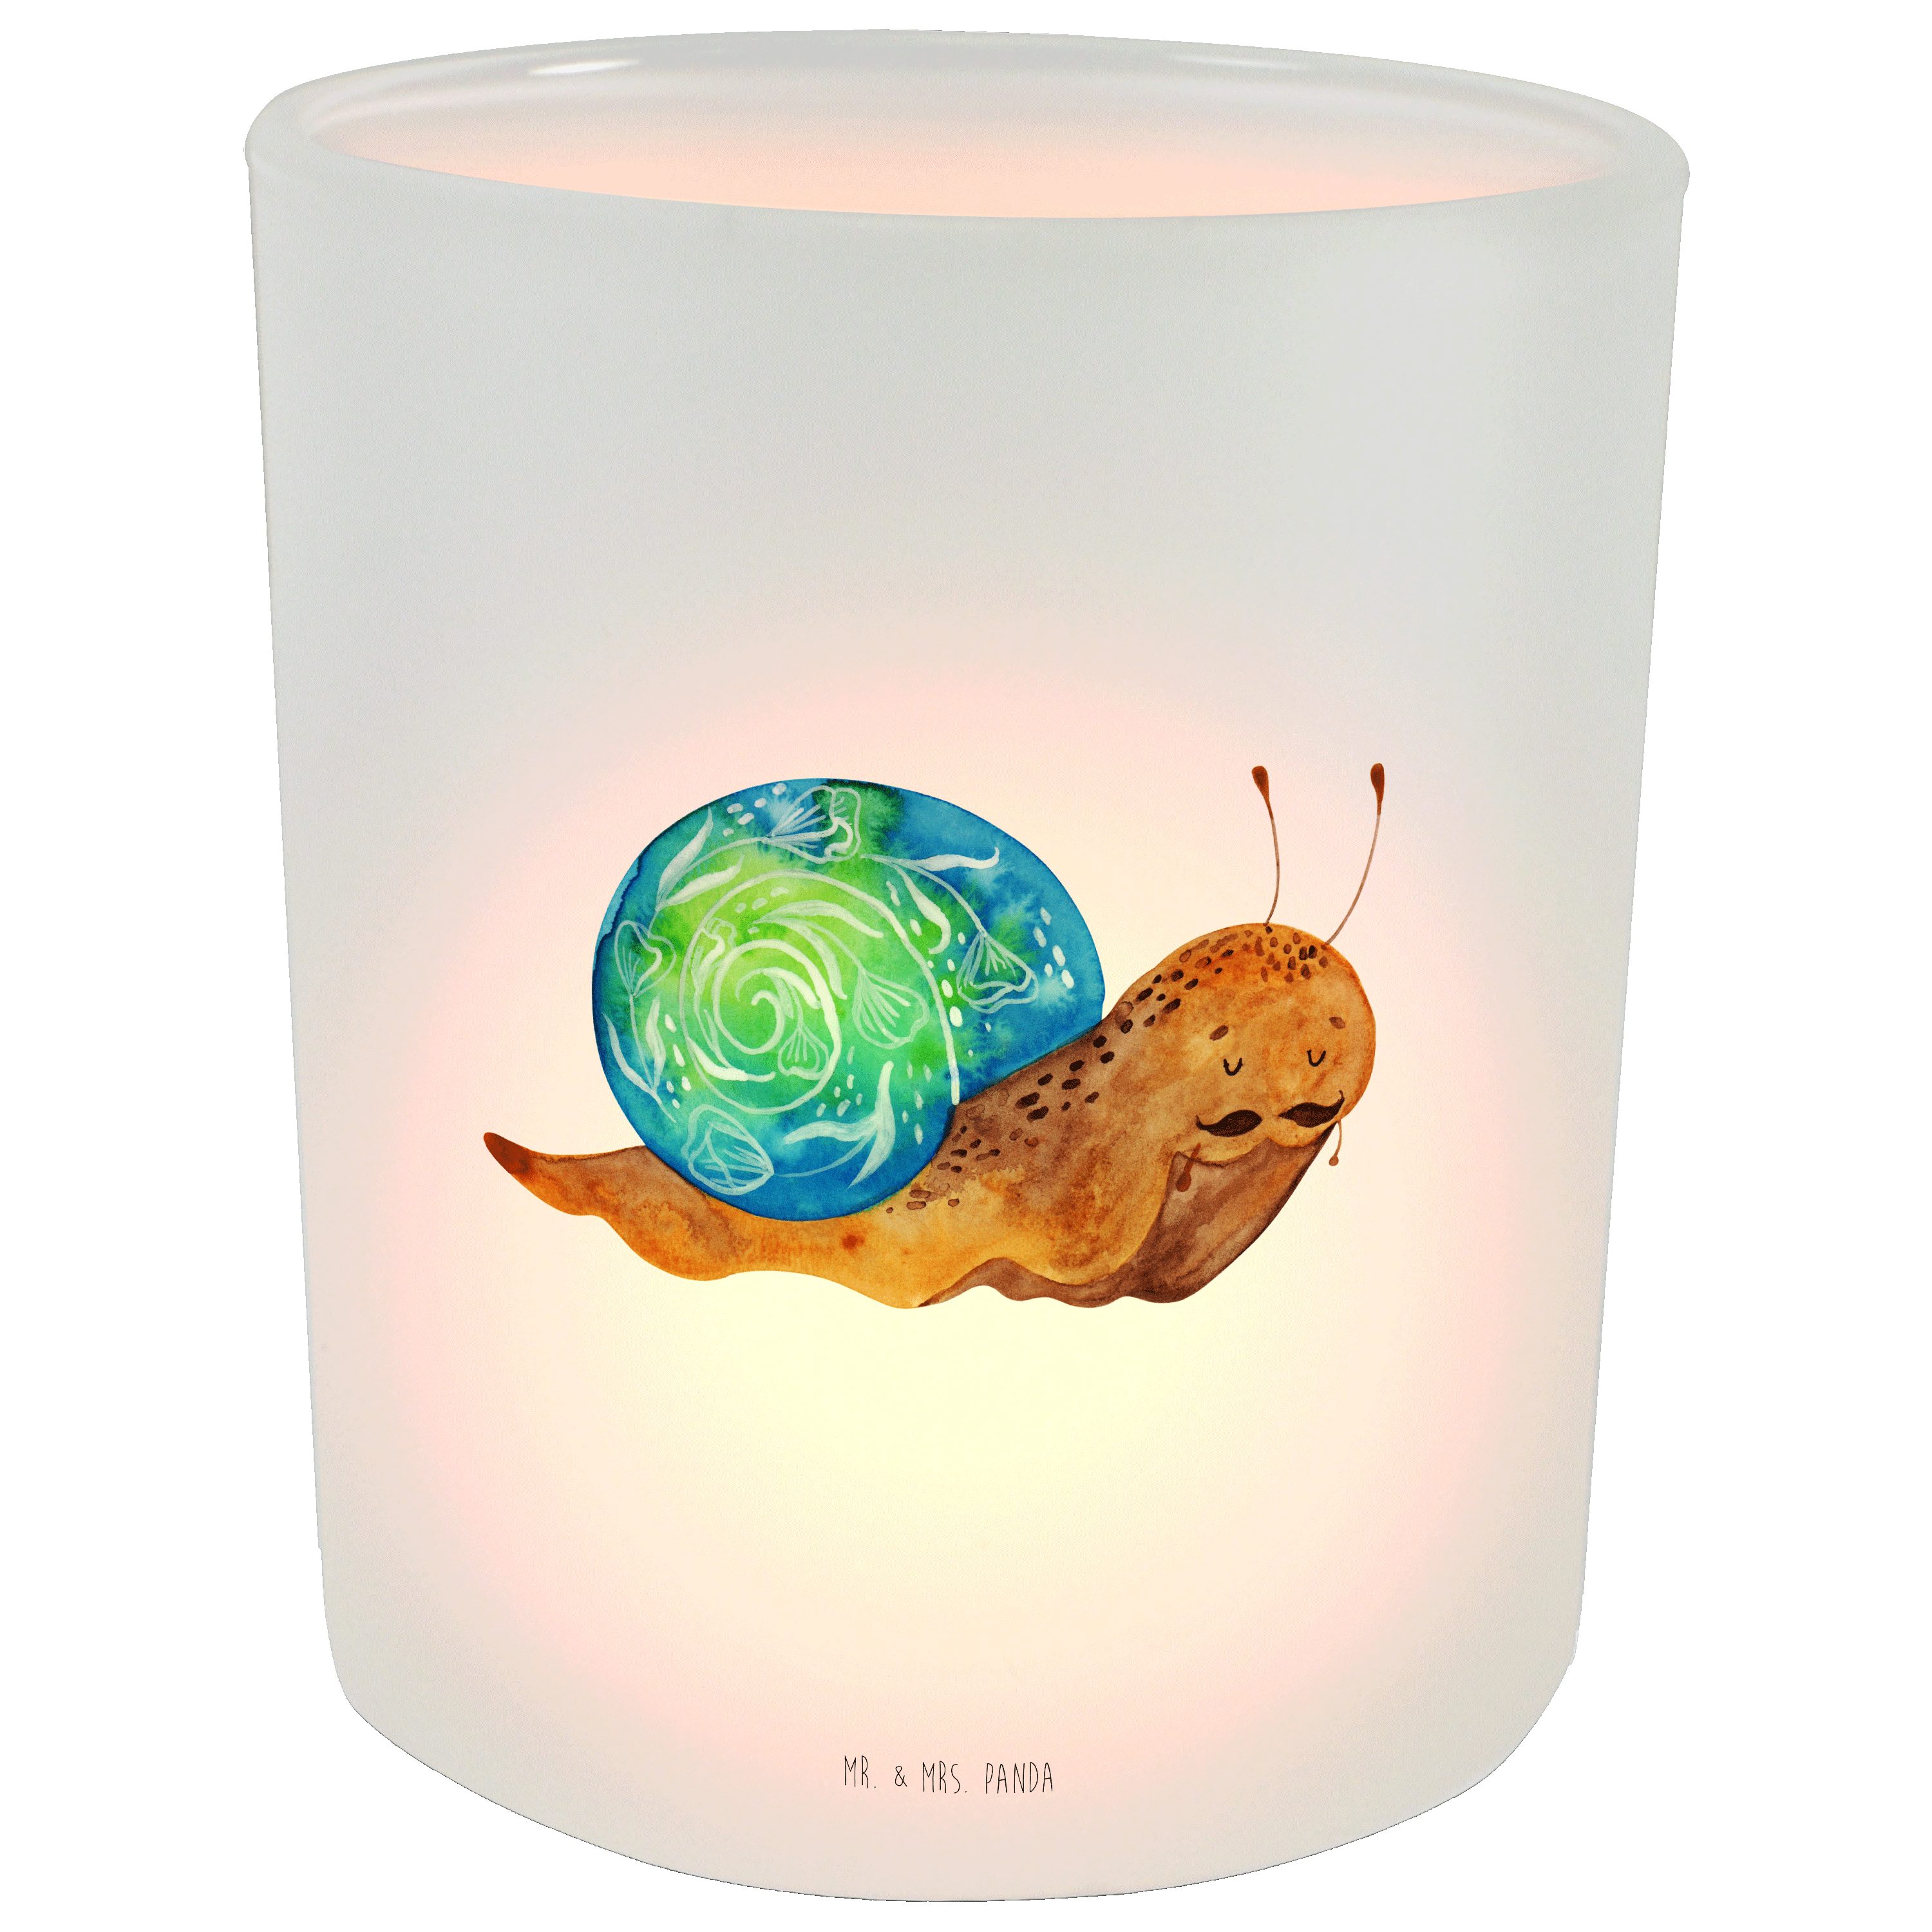 Mr. & Mrs. Panda - Schnecken, Transparent Schneckalot - Tee (1 Geschenk, Windlicht Sir St) Kerzenlicht